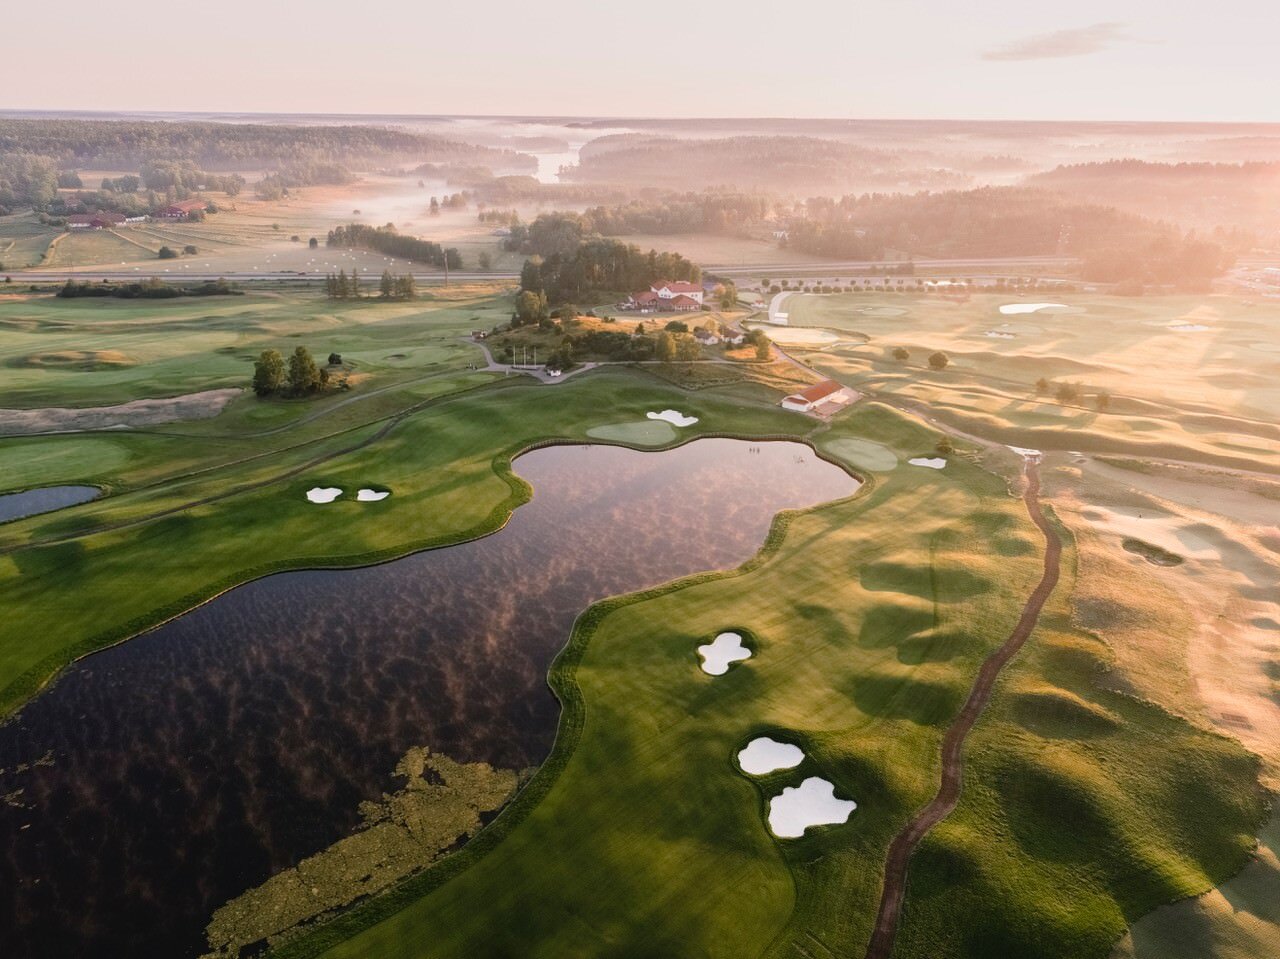 Osterakers Golfklubb, Sweden